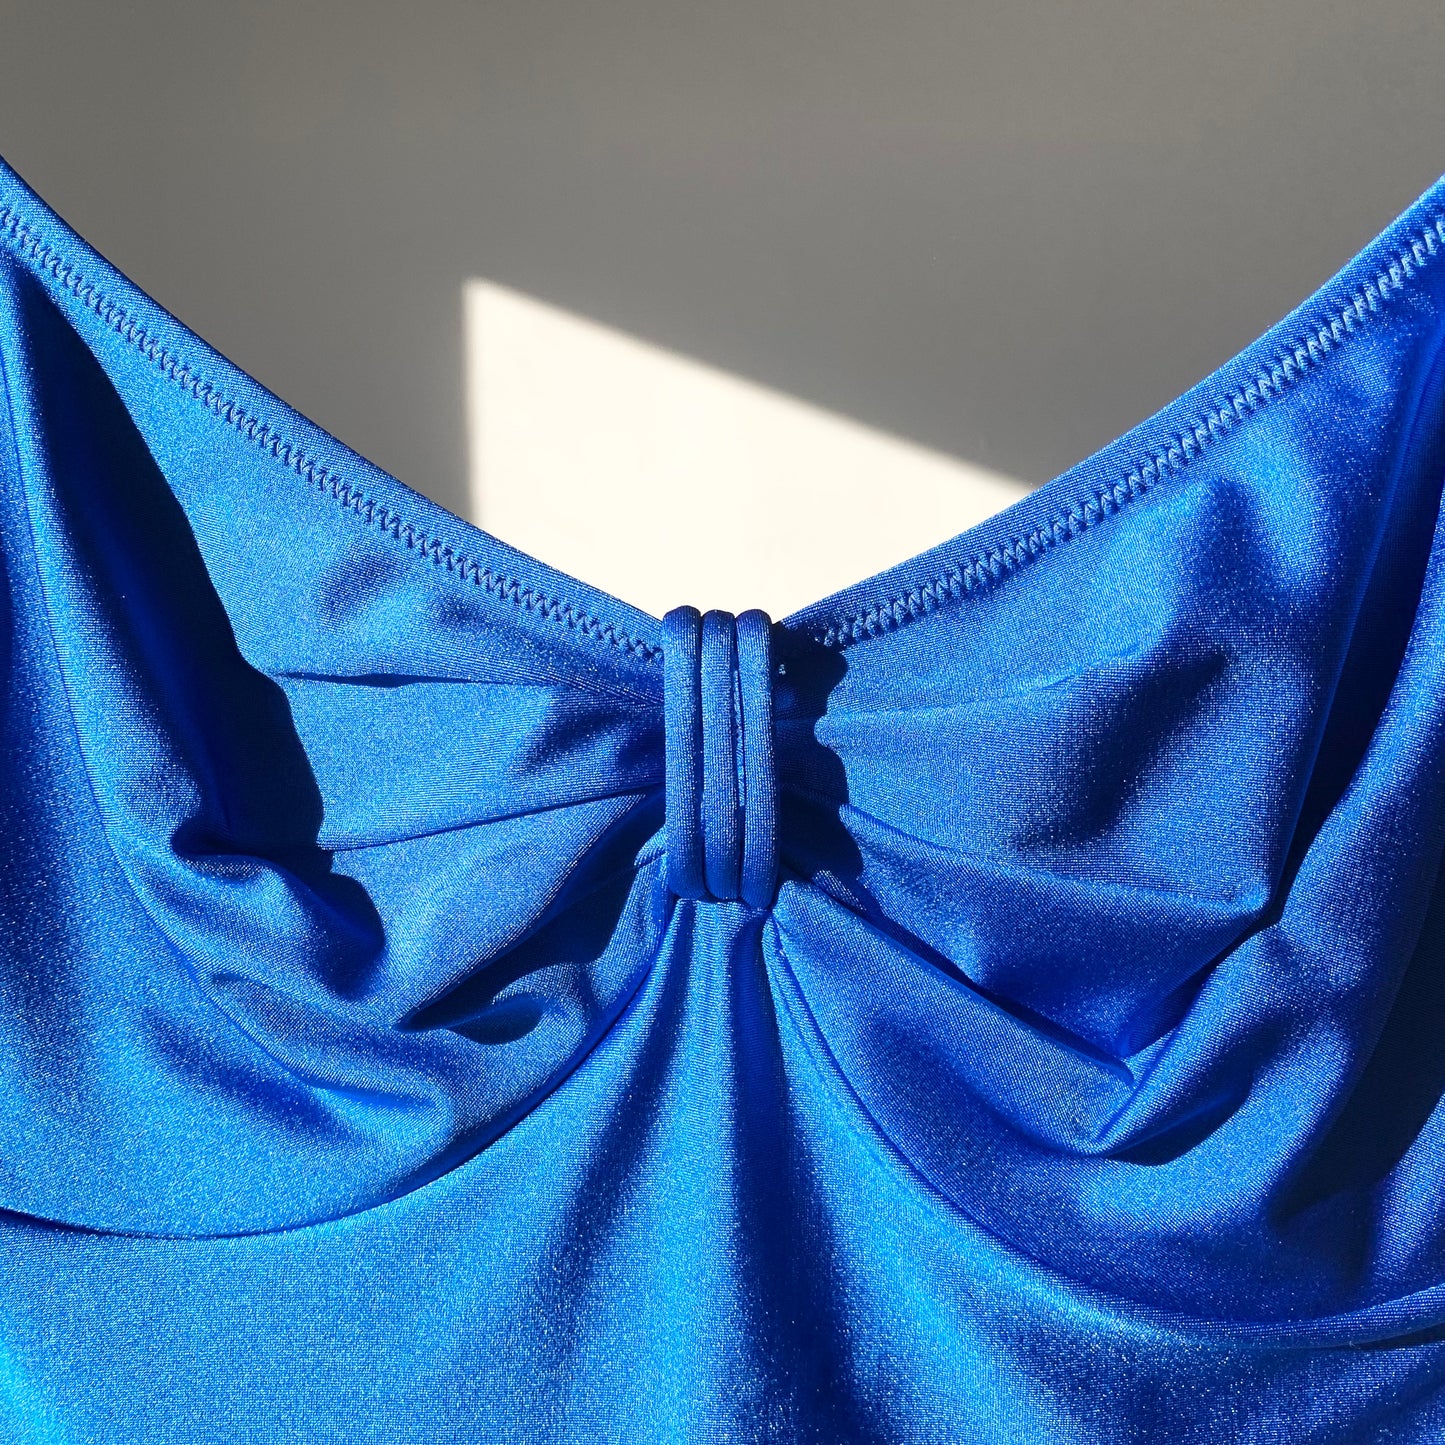 Metallic Blue Bathing Suit